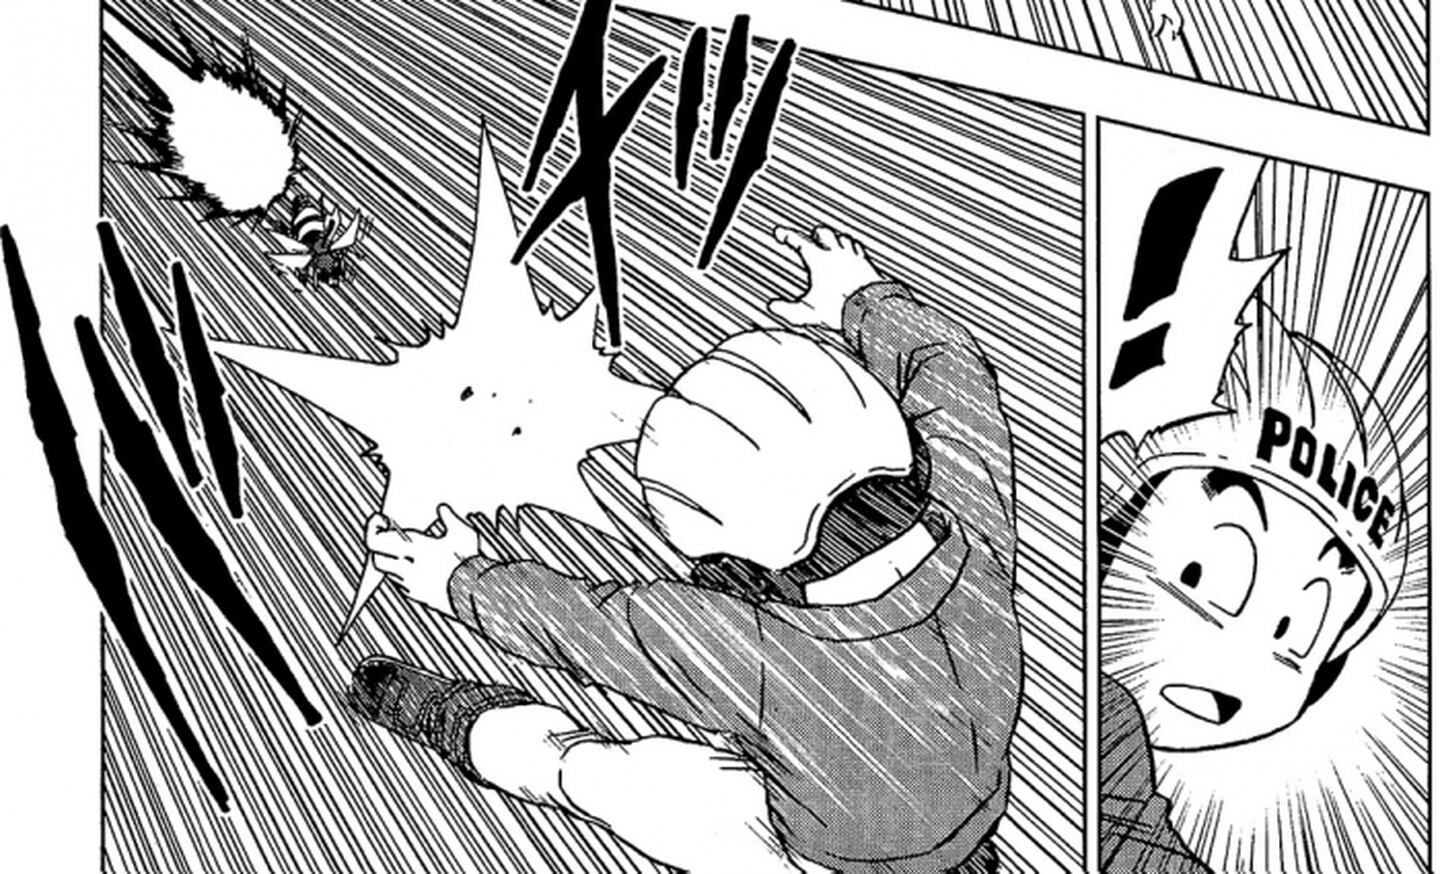 El capítulo 91 del manga de Dragon Ball Super nos trae de regreso a personajes muy queridos, como Krillin, pero nuevamente es una burla para todos.